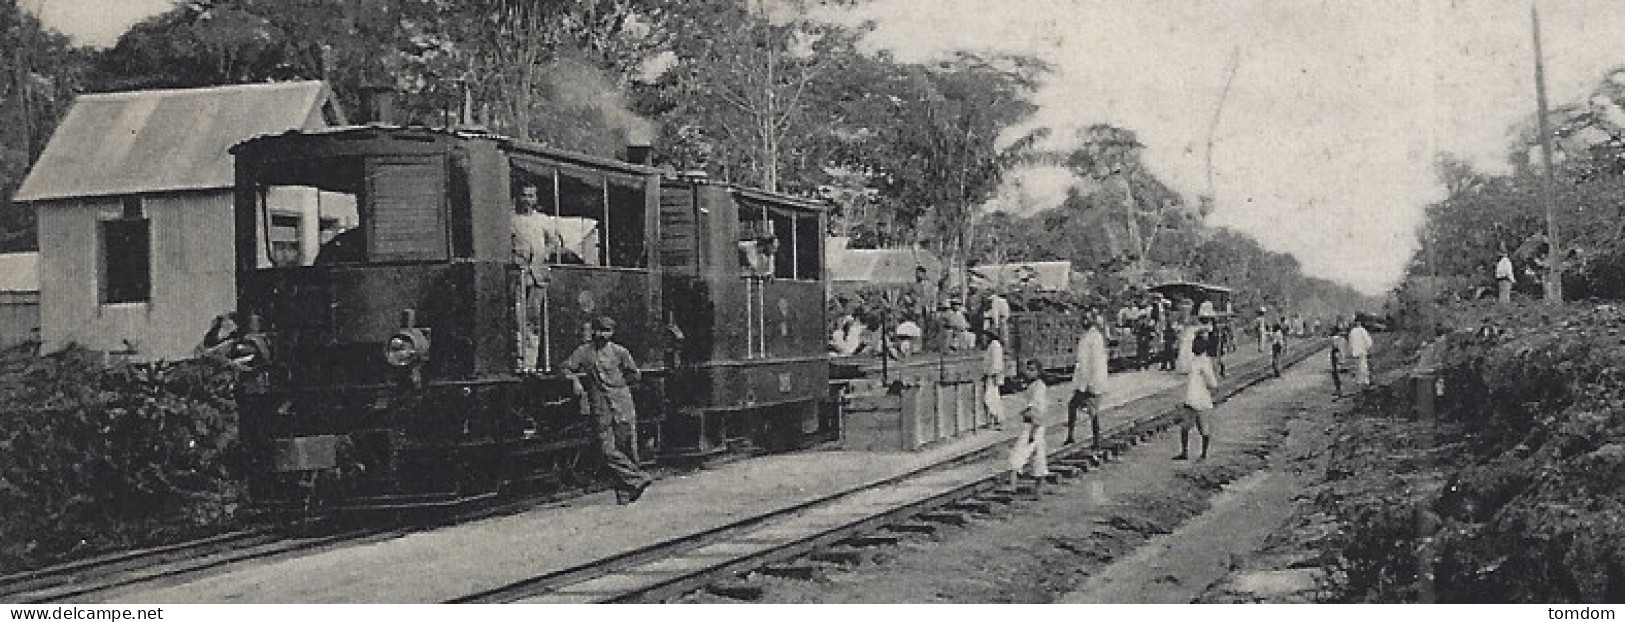 Guyane*** Surinam, Ex Guyane Hollandaise- Spoorwegstation  "Koffiedjompo" (Eug.Klein N°4) - Surinam